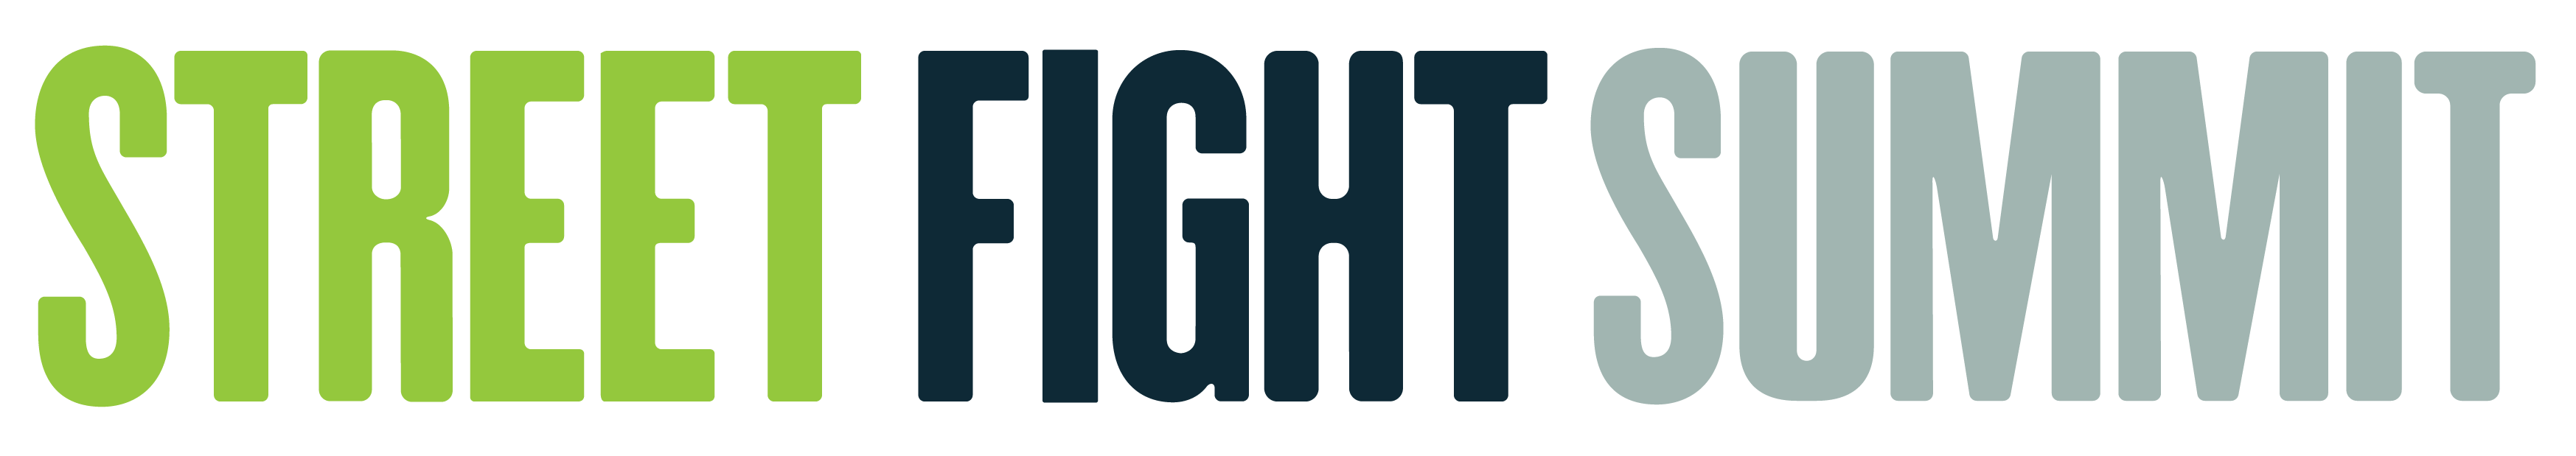 Street Fight Summit logo